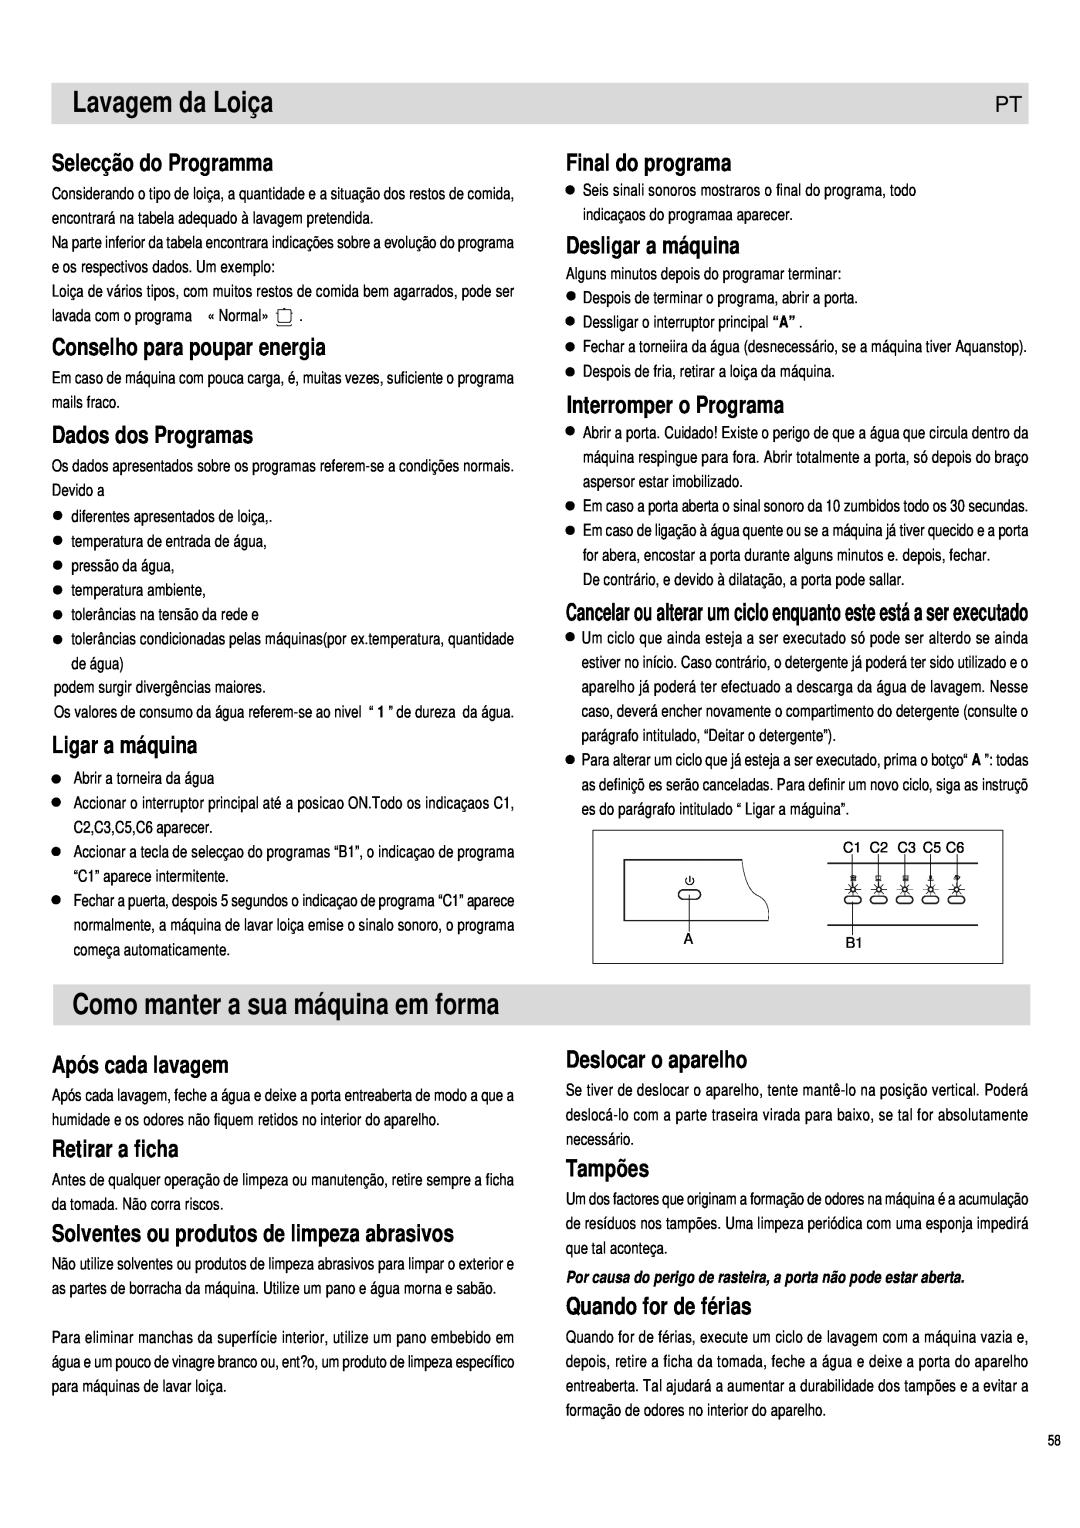 Haier DW12-PFE1 S manual Lavagem da Loiça, Como manter a sua máquina em forma, Selecção do Programma, Dados dos Programas 